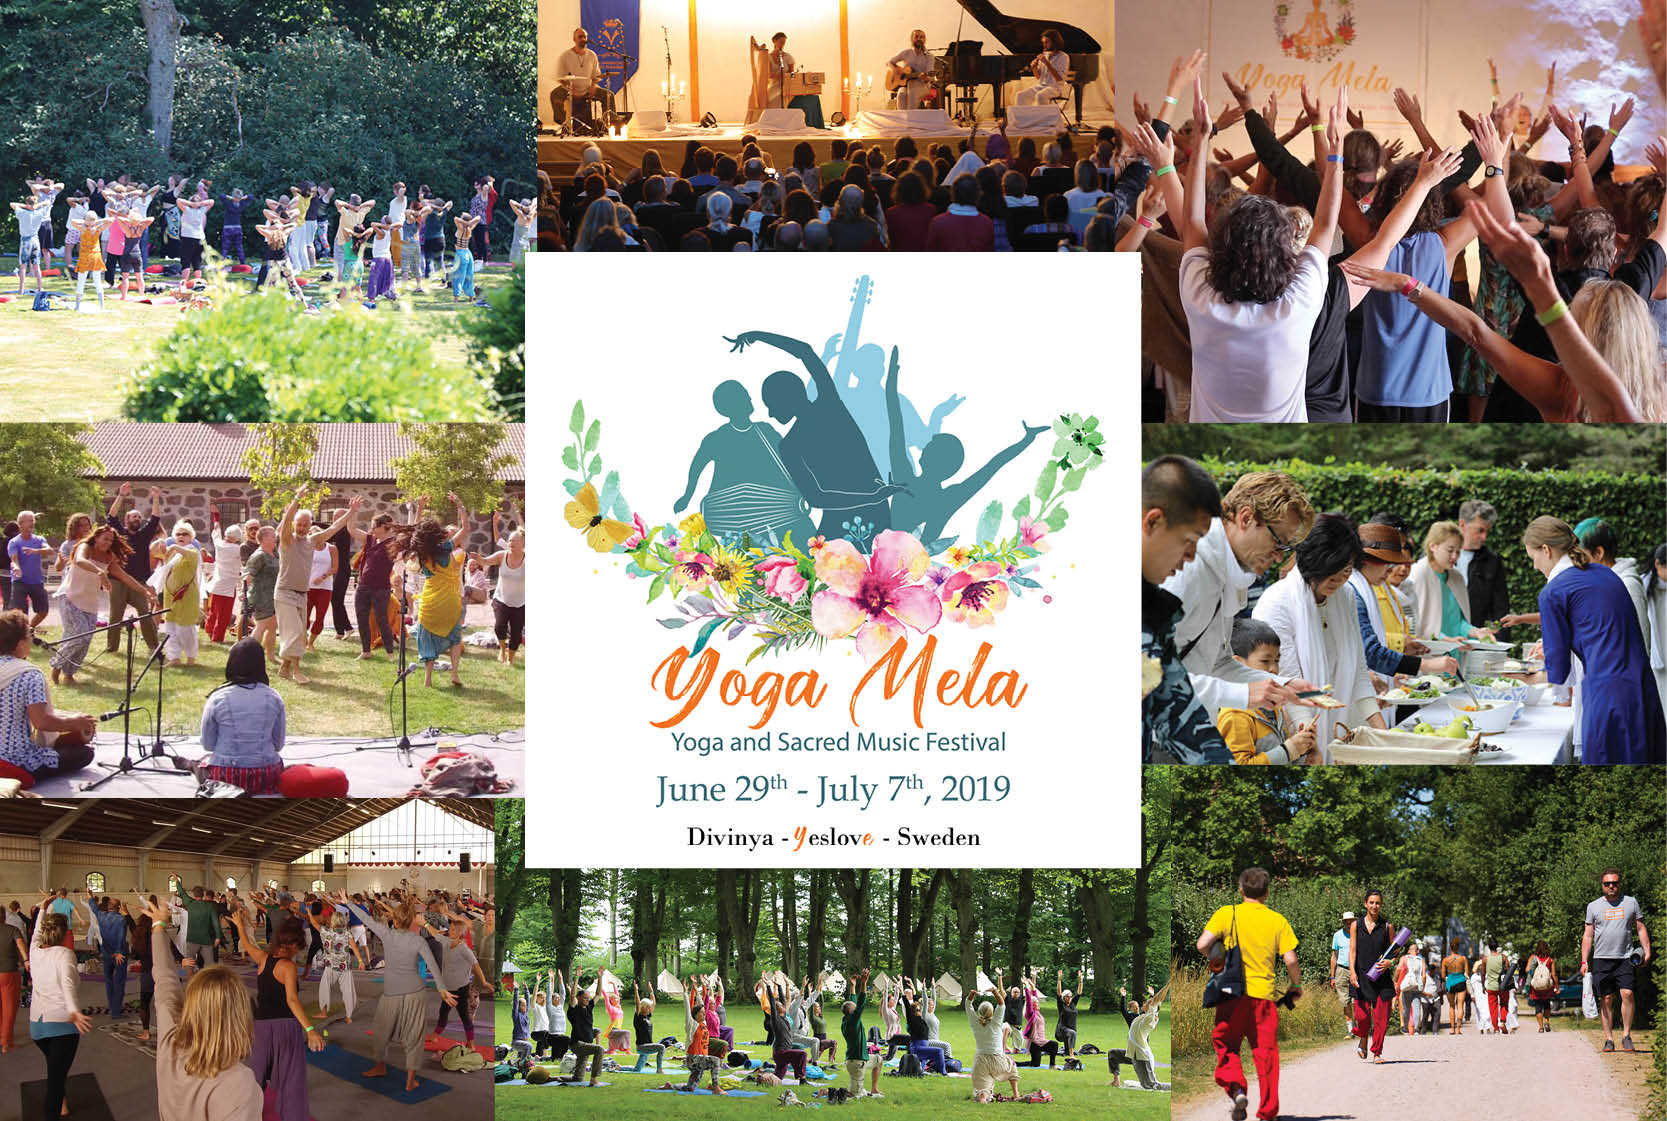 Yoga Mela - Yoga and Sacred Music Festival 2019 in Divinya - Eslöv, Sweden  - 29 JUN 2019